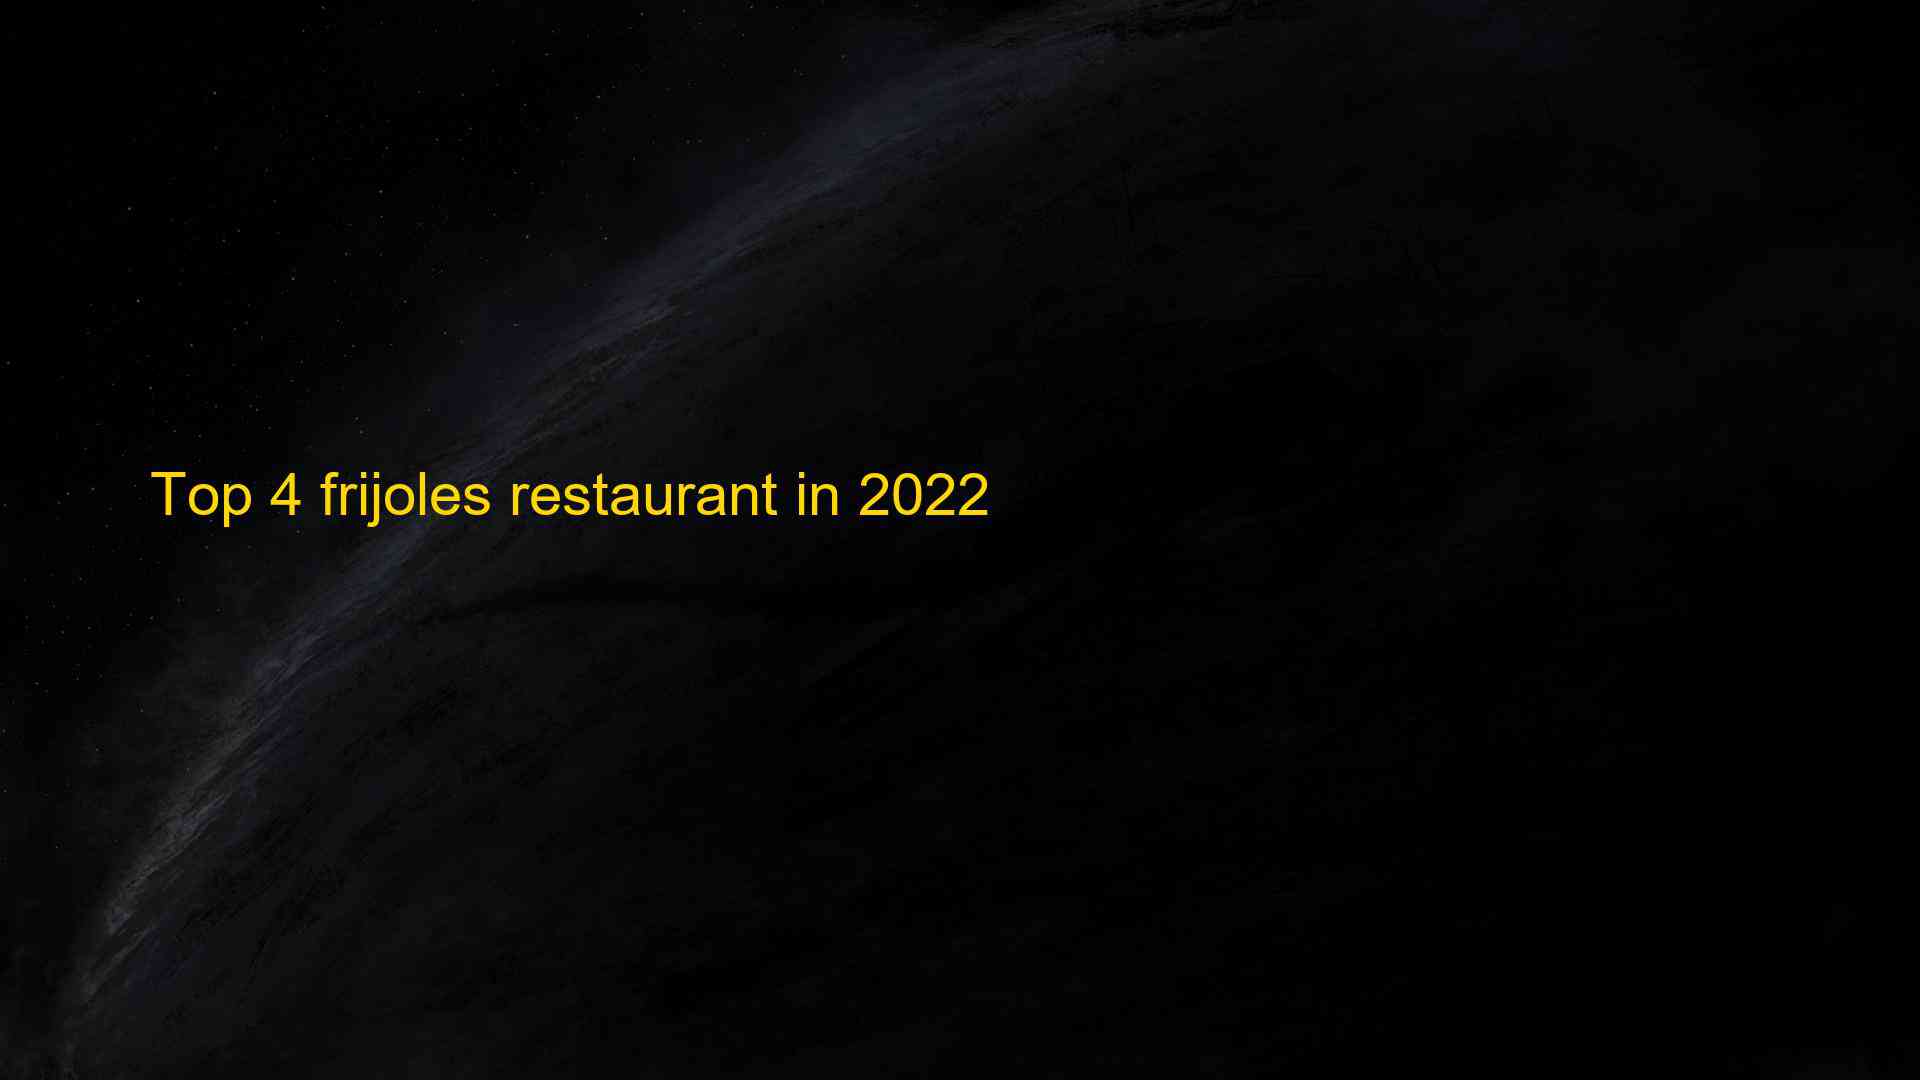 Top 4 frijoles restaurant in 2022 1663515107